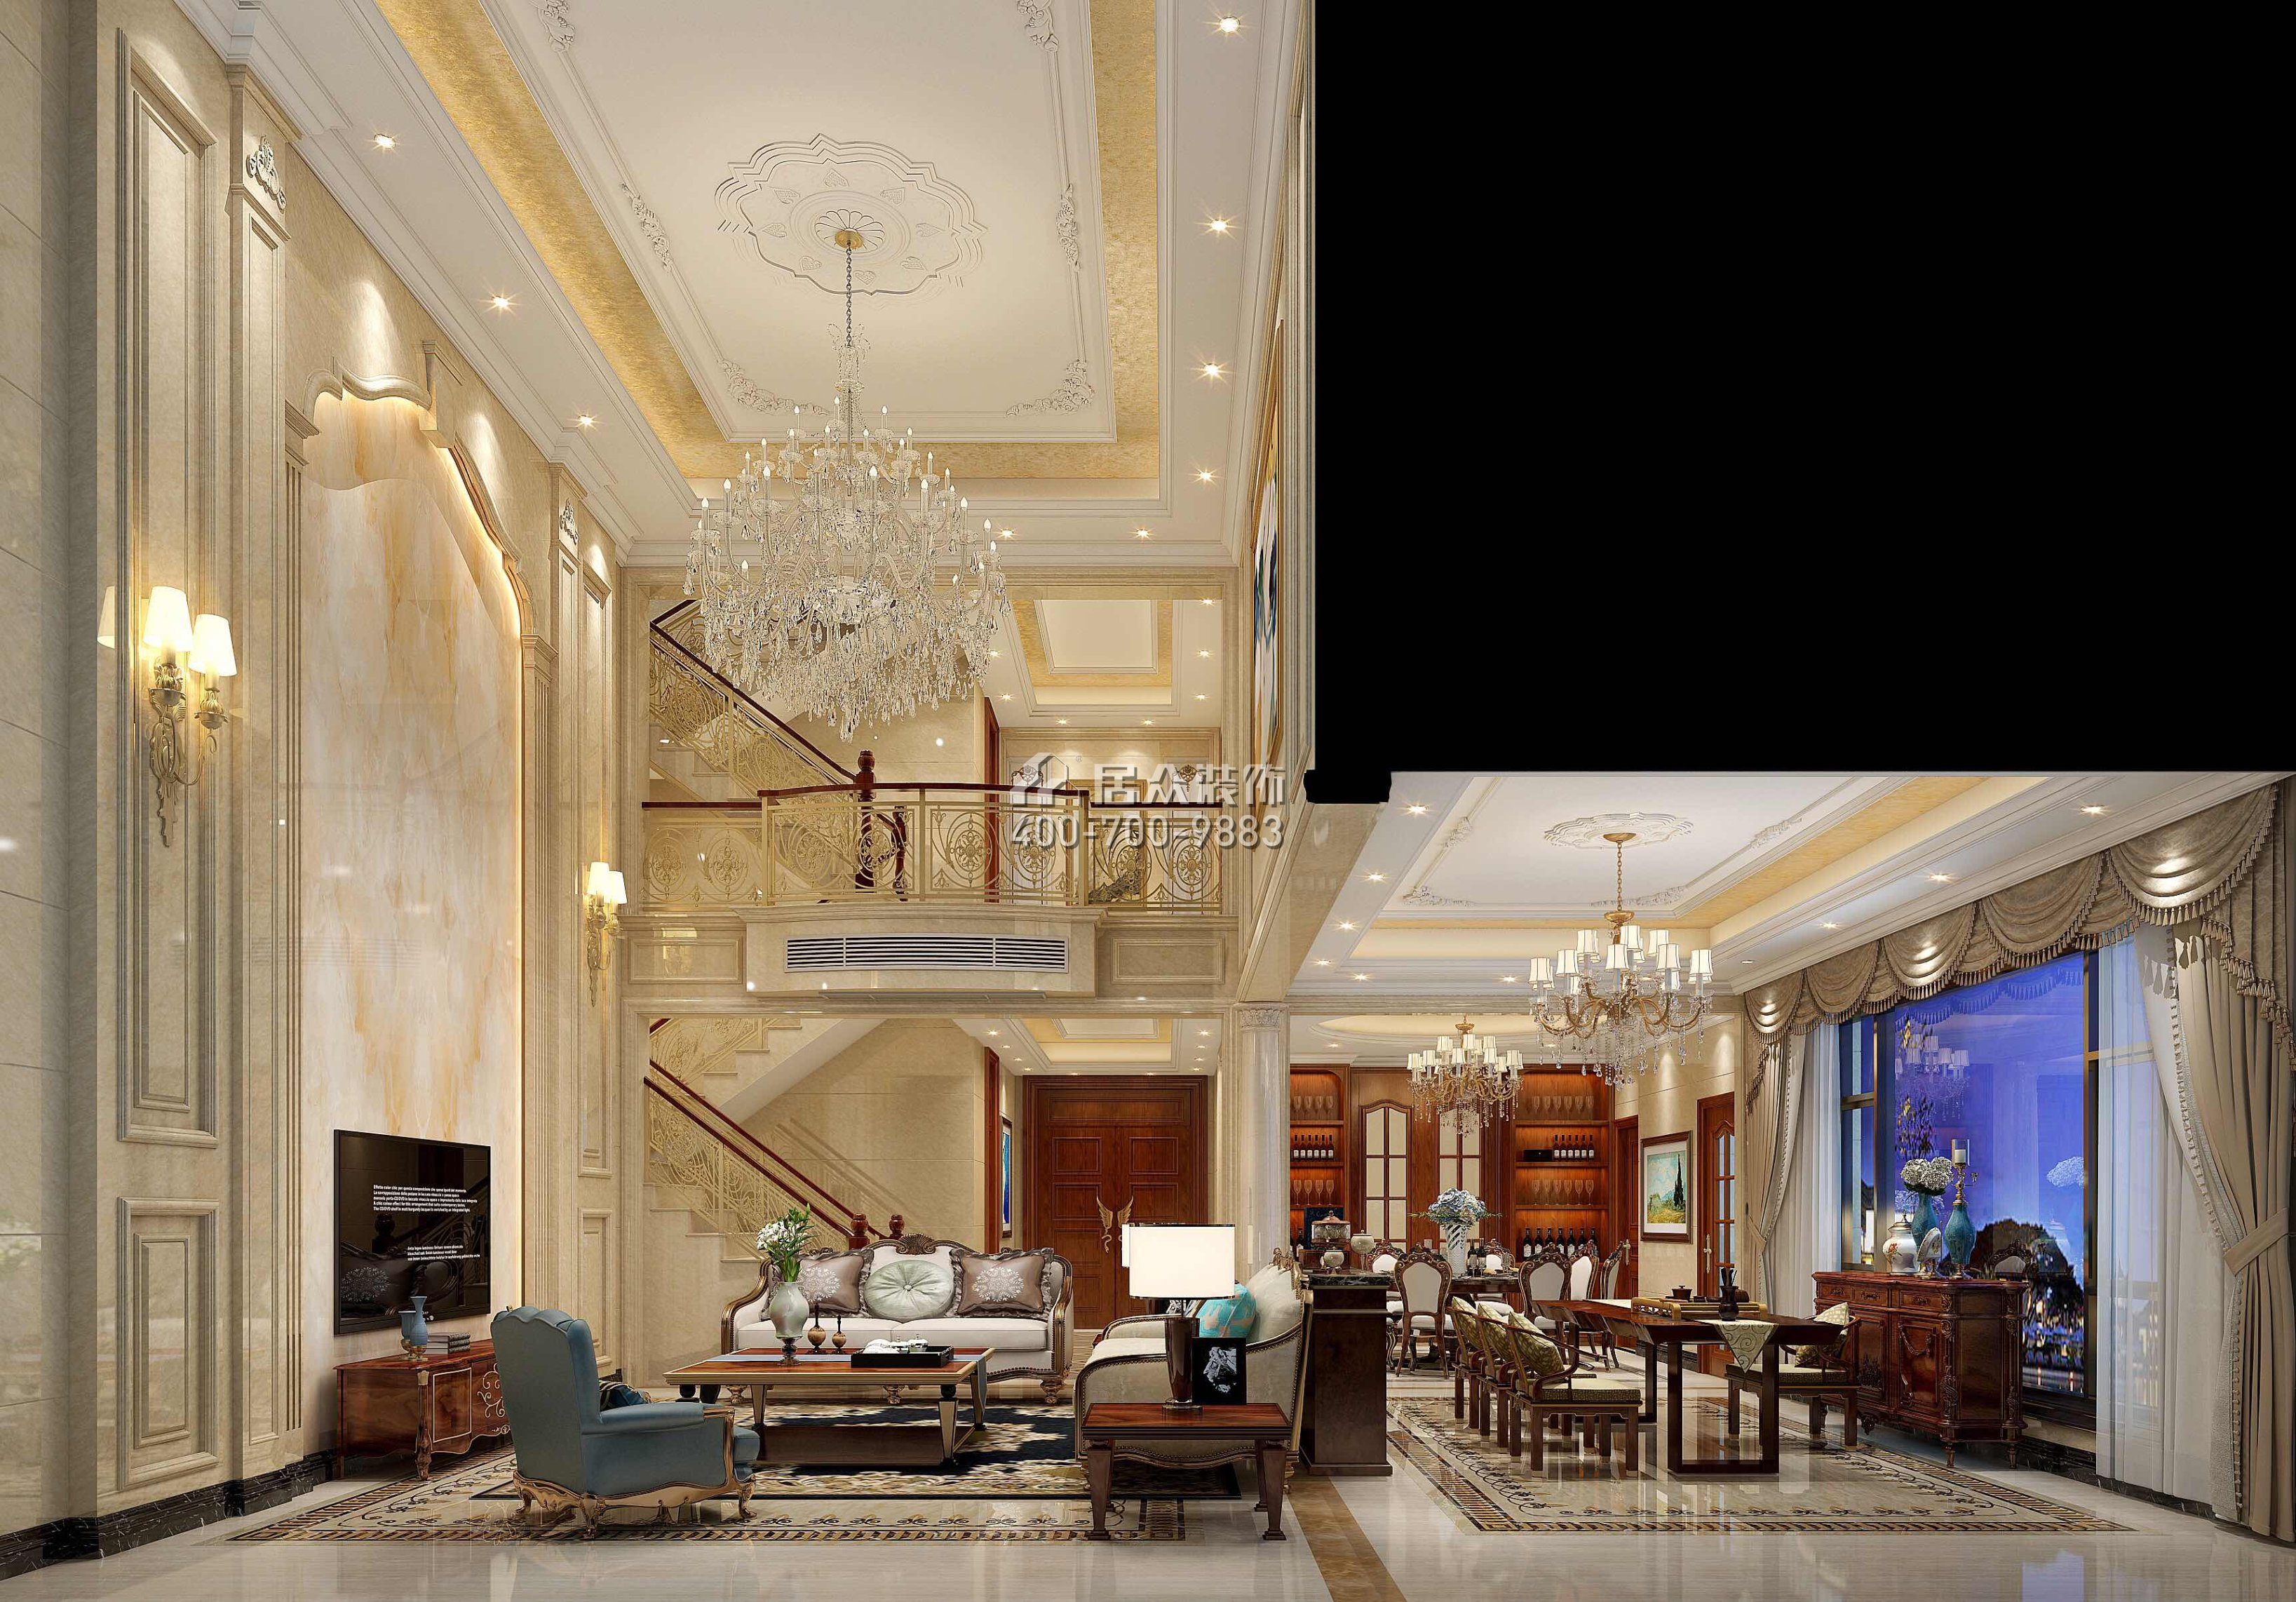 海逸豪庭321平方米歐式風格別墅戶型客廳裝修效果圖